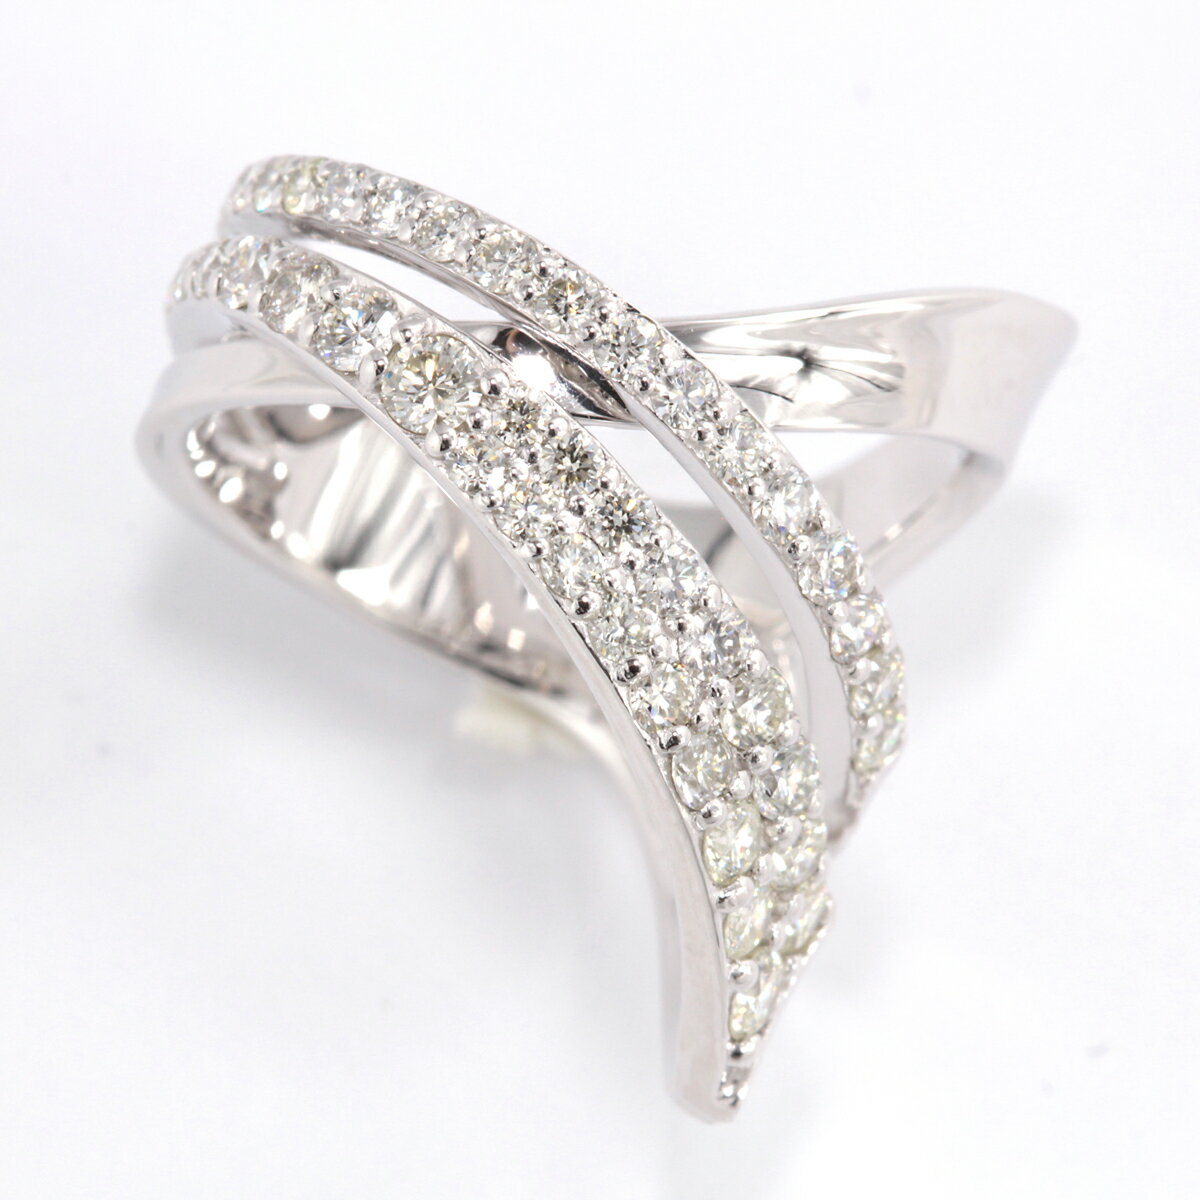 1.0CT ダイヤモンド リング R3705DI-P[サイズ:8号〜16号(0.5刻み可)] 指輪 ダイヤモンド ジュエリー アクセサリー レディース ファッション ギフト プレゼント 誕生日 記念日 お祝い おしゃれ 大人